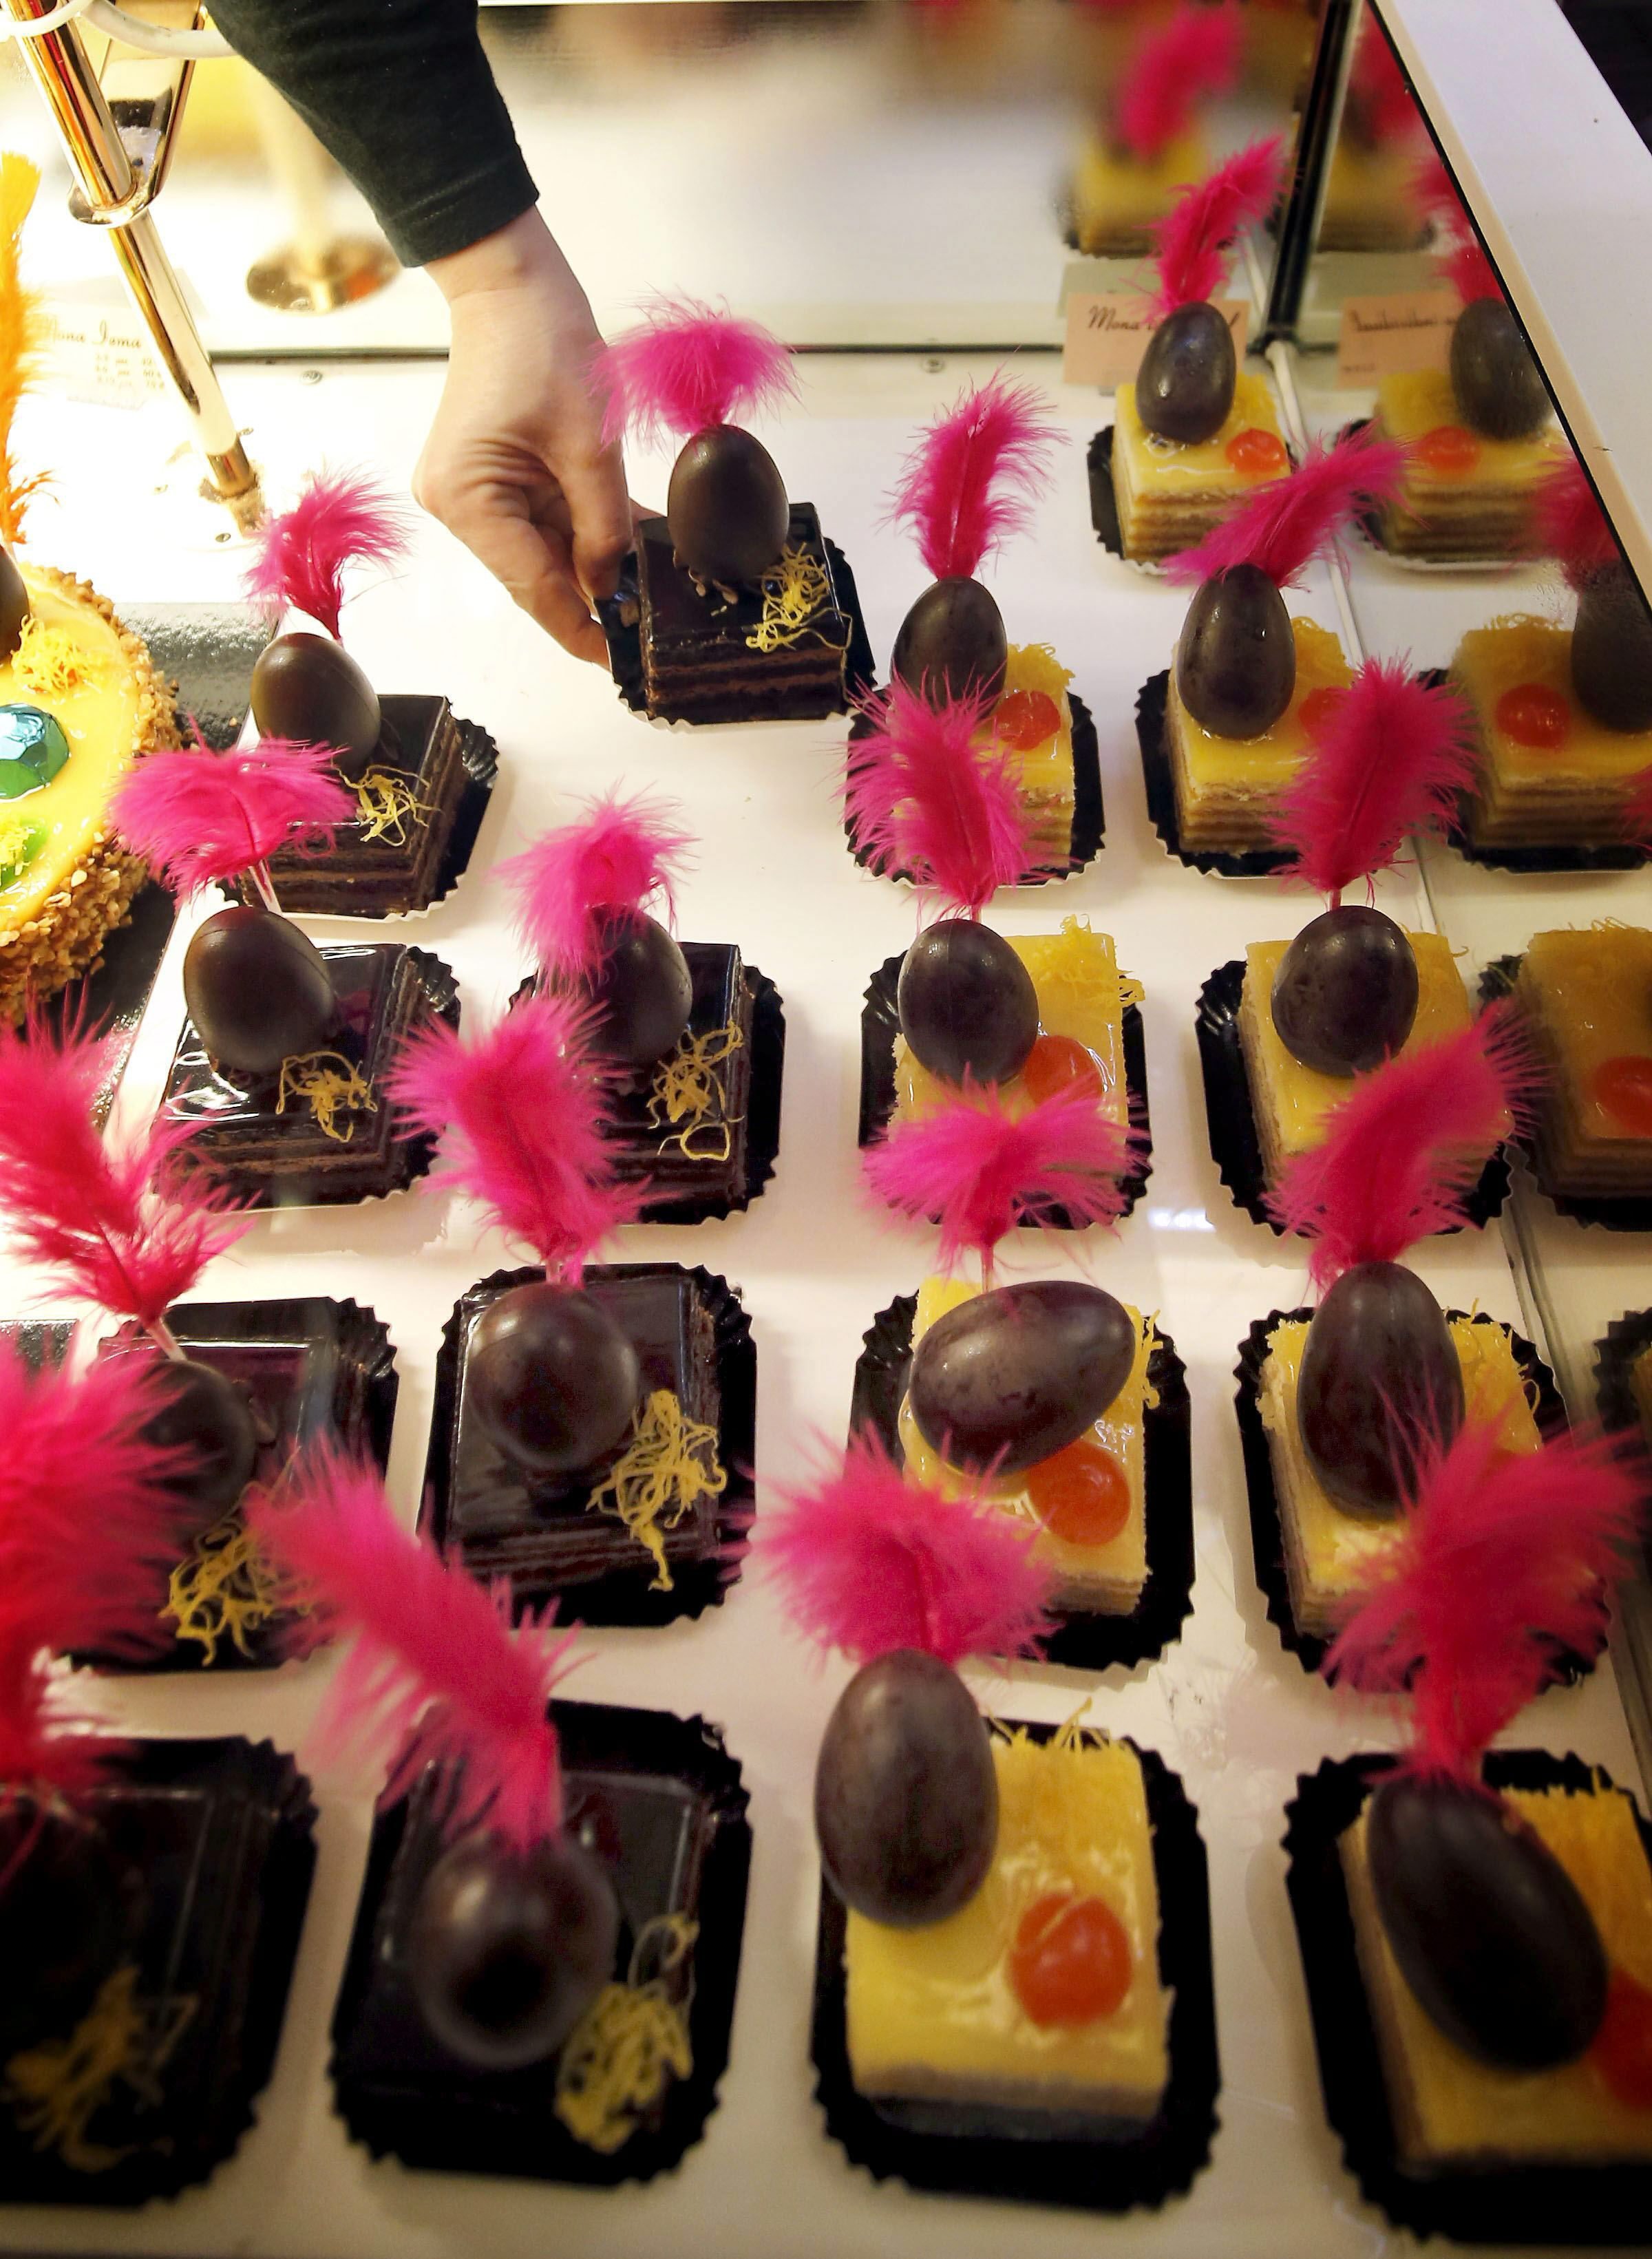 Pascua en cuarentena: los pasteleros sirven monas a domicilio por el coronavirus